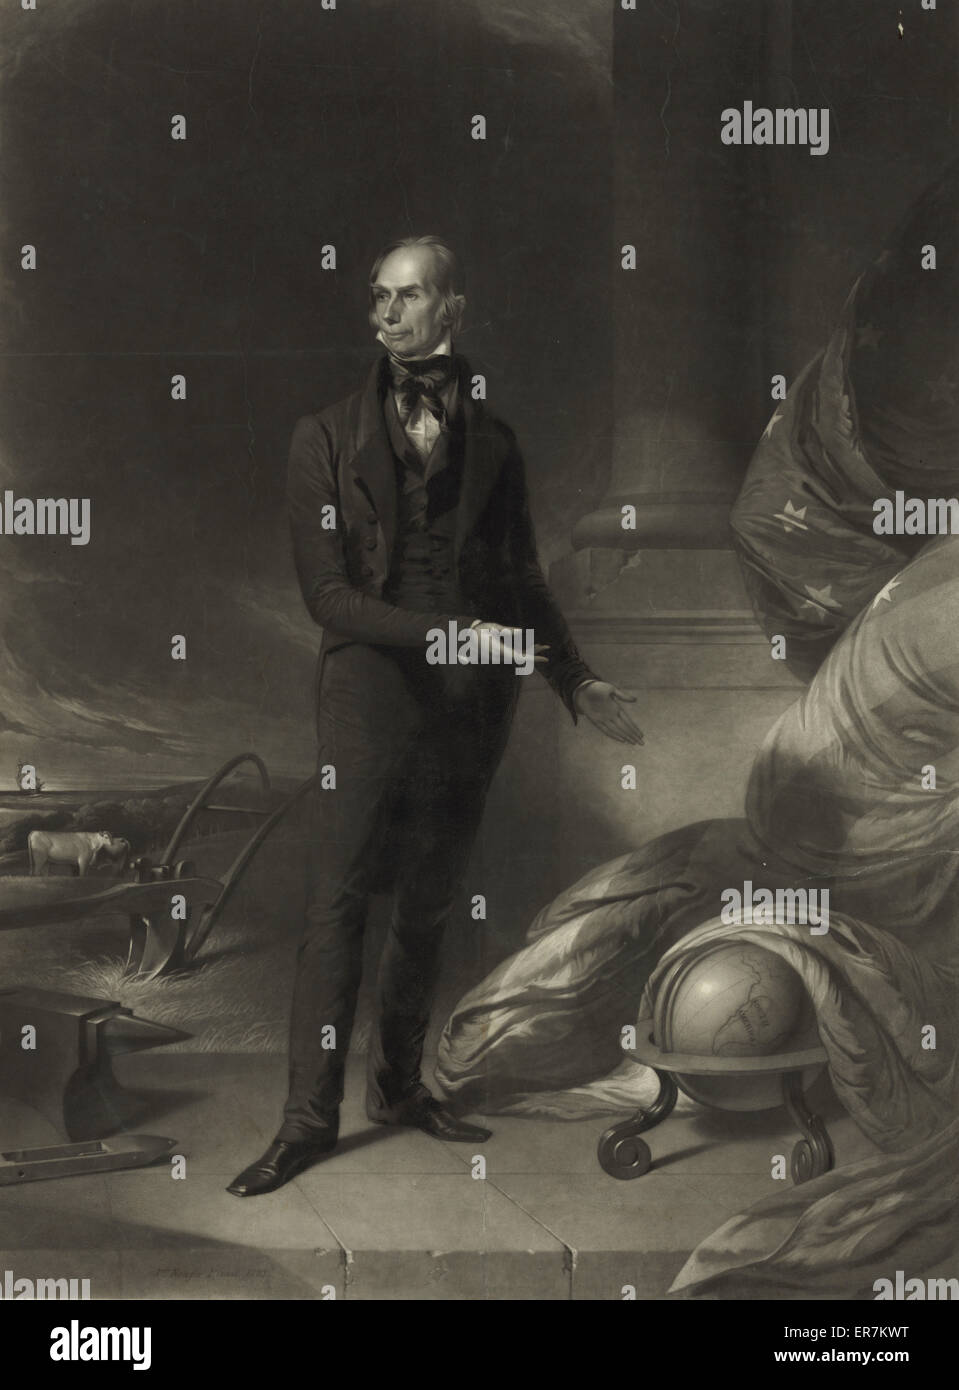 Henry Clay. Eine formale Kampagne Porträt des Whig Präsidentschaftskandidaten Henry Clay, nach dem Gemälde von John Neagle Geschehenzu Ashland, Clays Anwesen in Kentucky. Wie dieses Druckes der Legende heißt es, die ursprüngliche Reihenfolge der Philadelphia Whigs gemalt wurde und Stockfoto